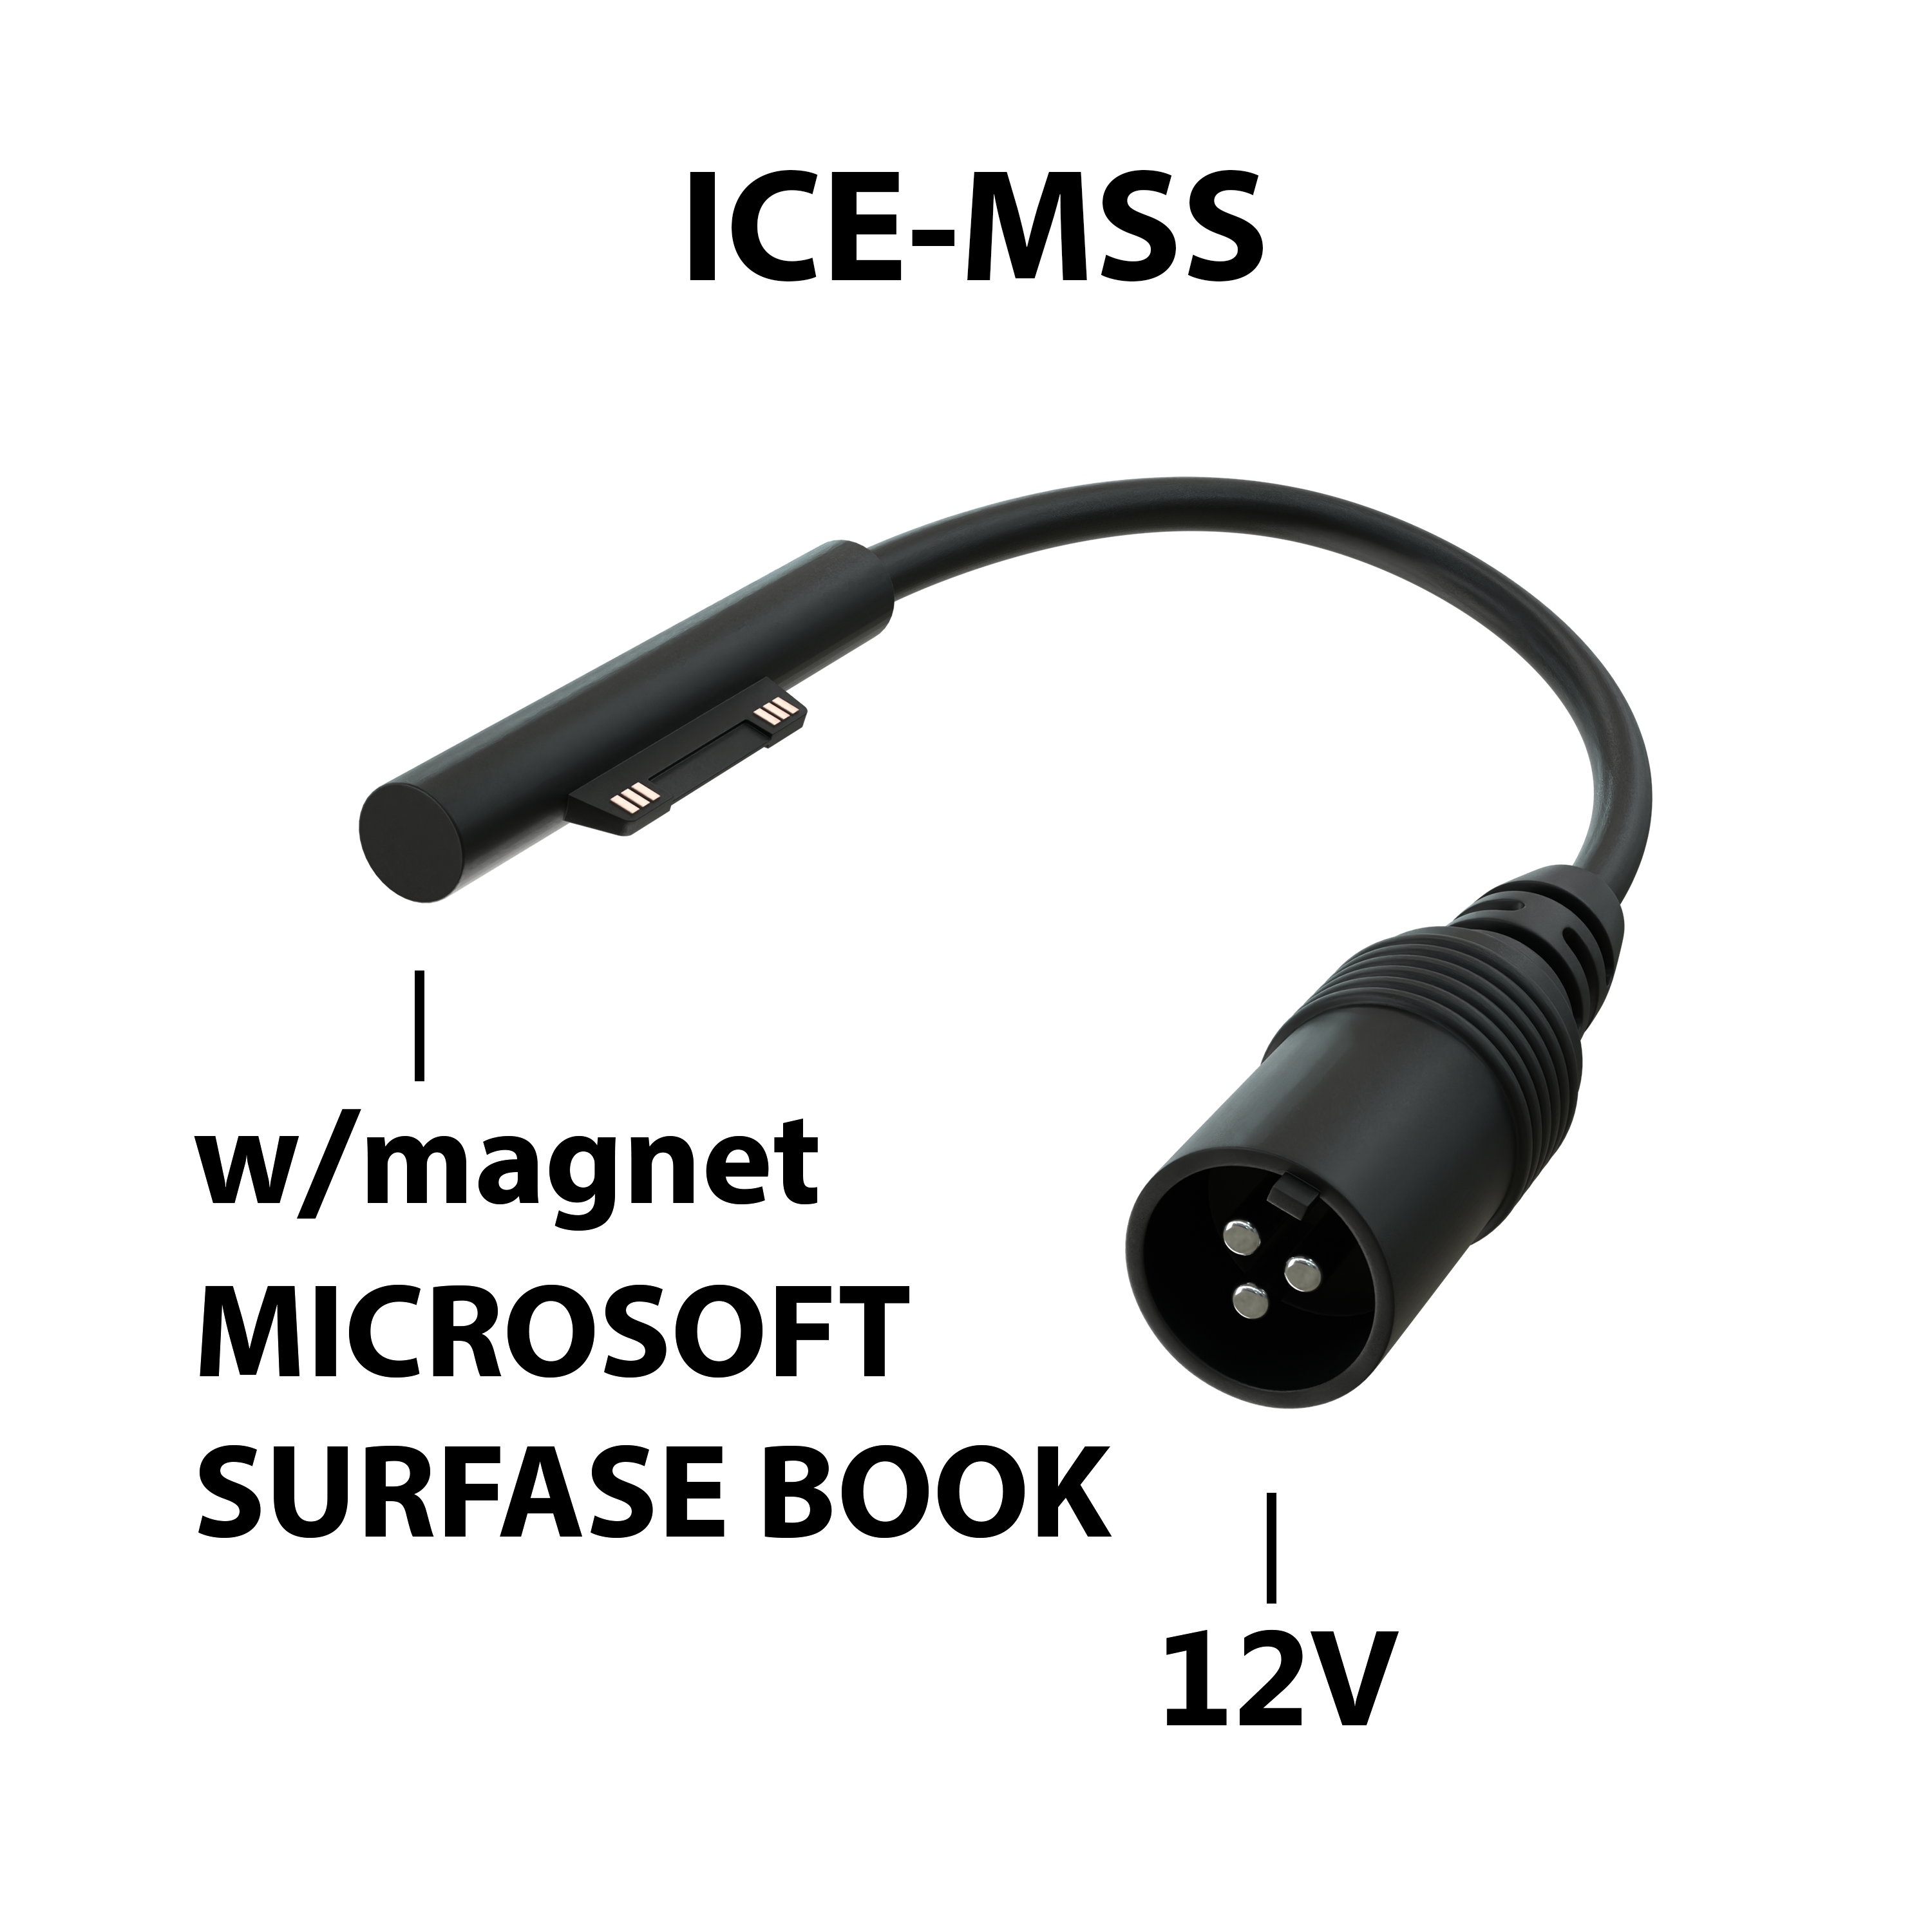 Блок питания для ноутбука ICEPAD ICE-MSS 19.5Вт для Microsoft